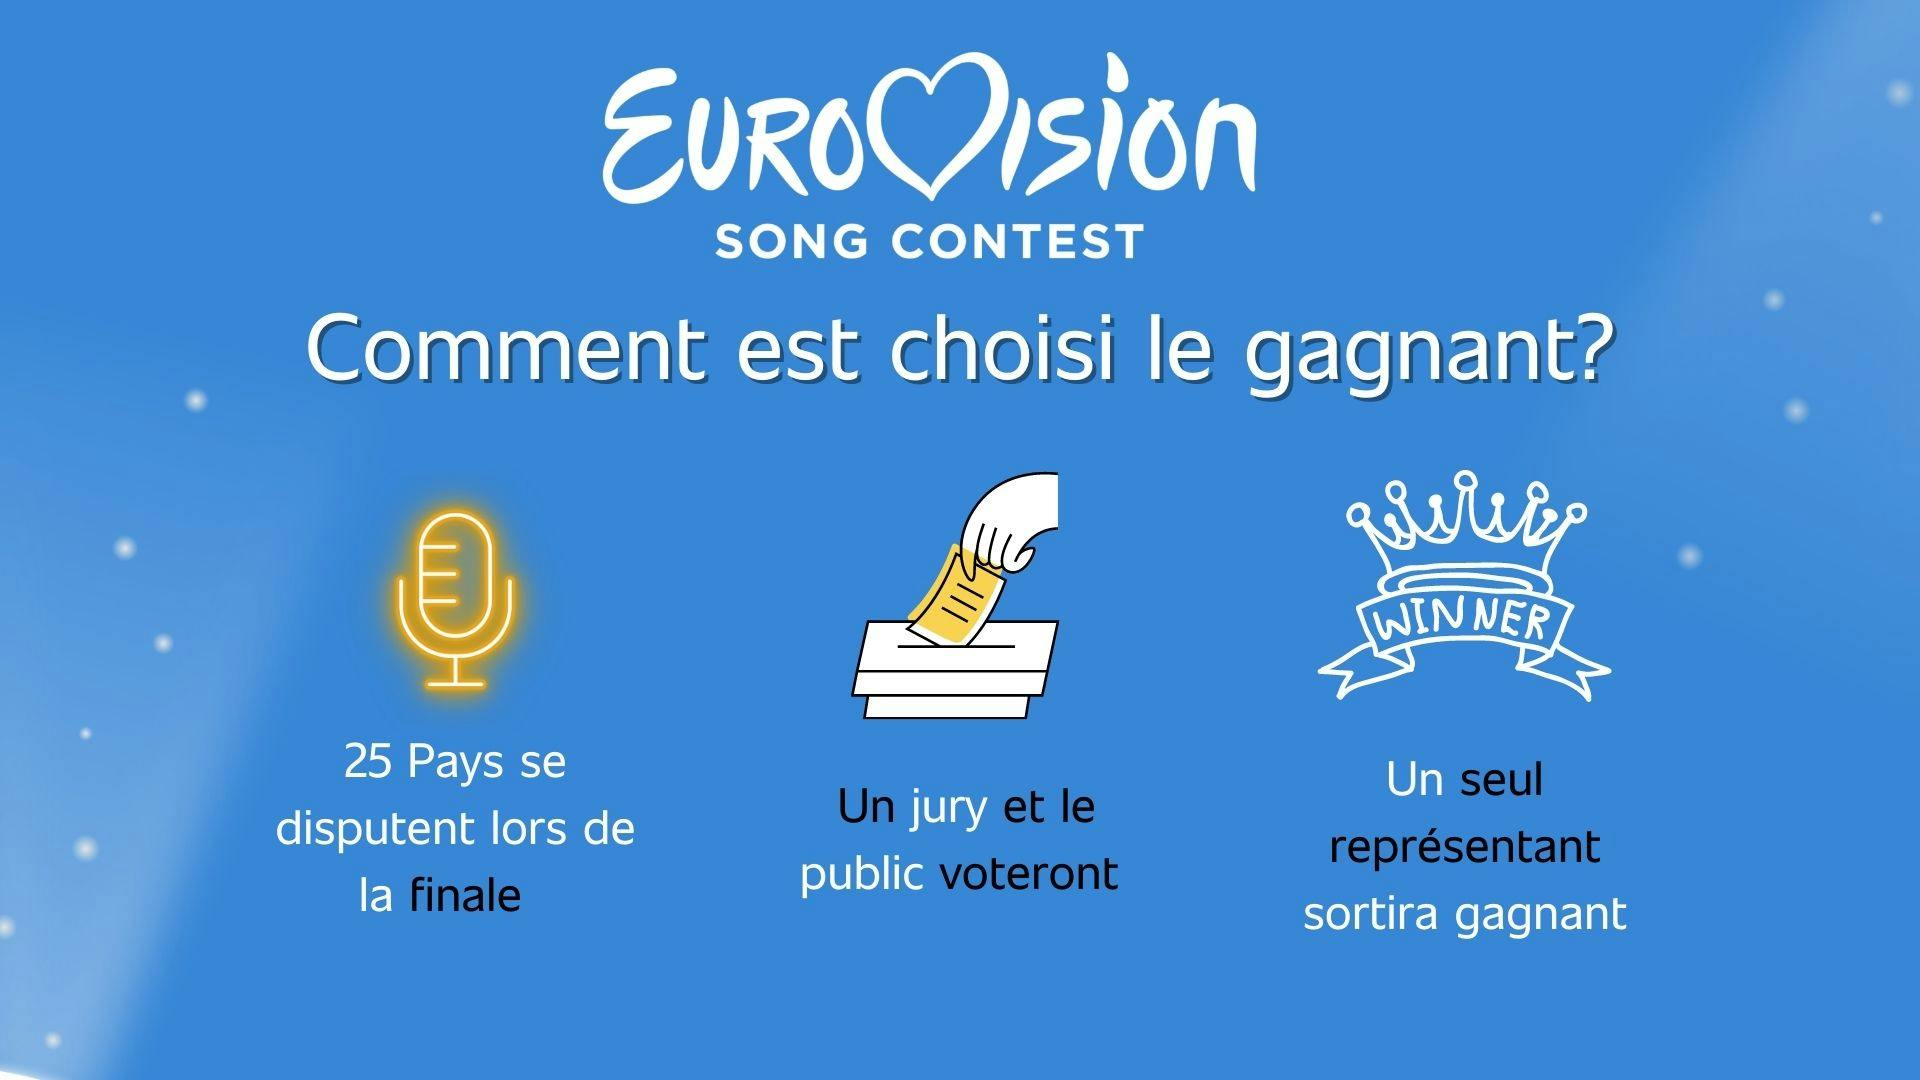 Illustration qui montre comment le gagnant de l'Eurovision est choisi suite à un vote